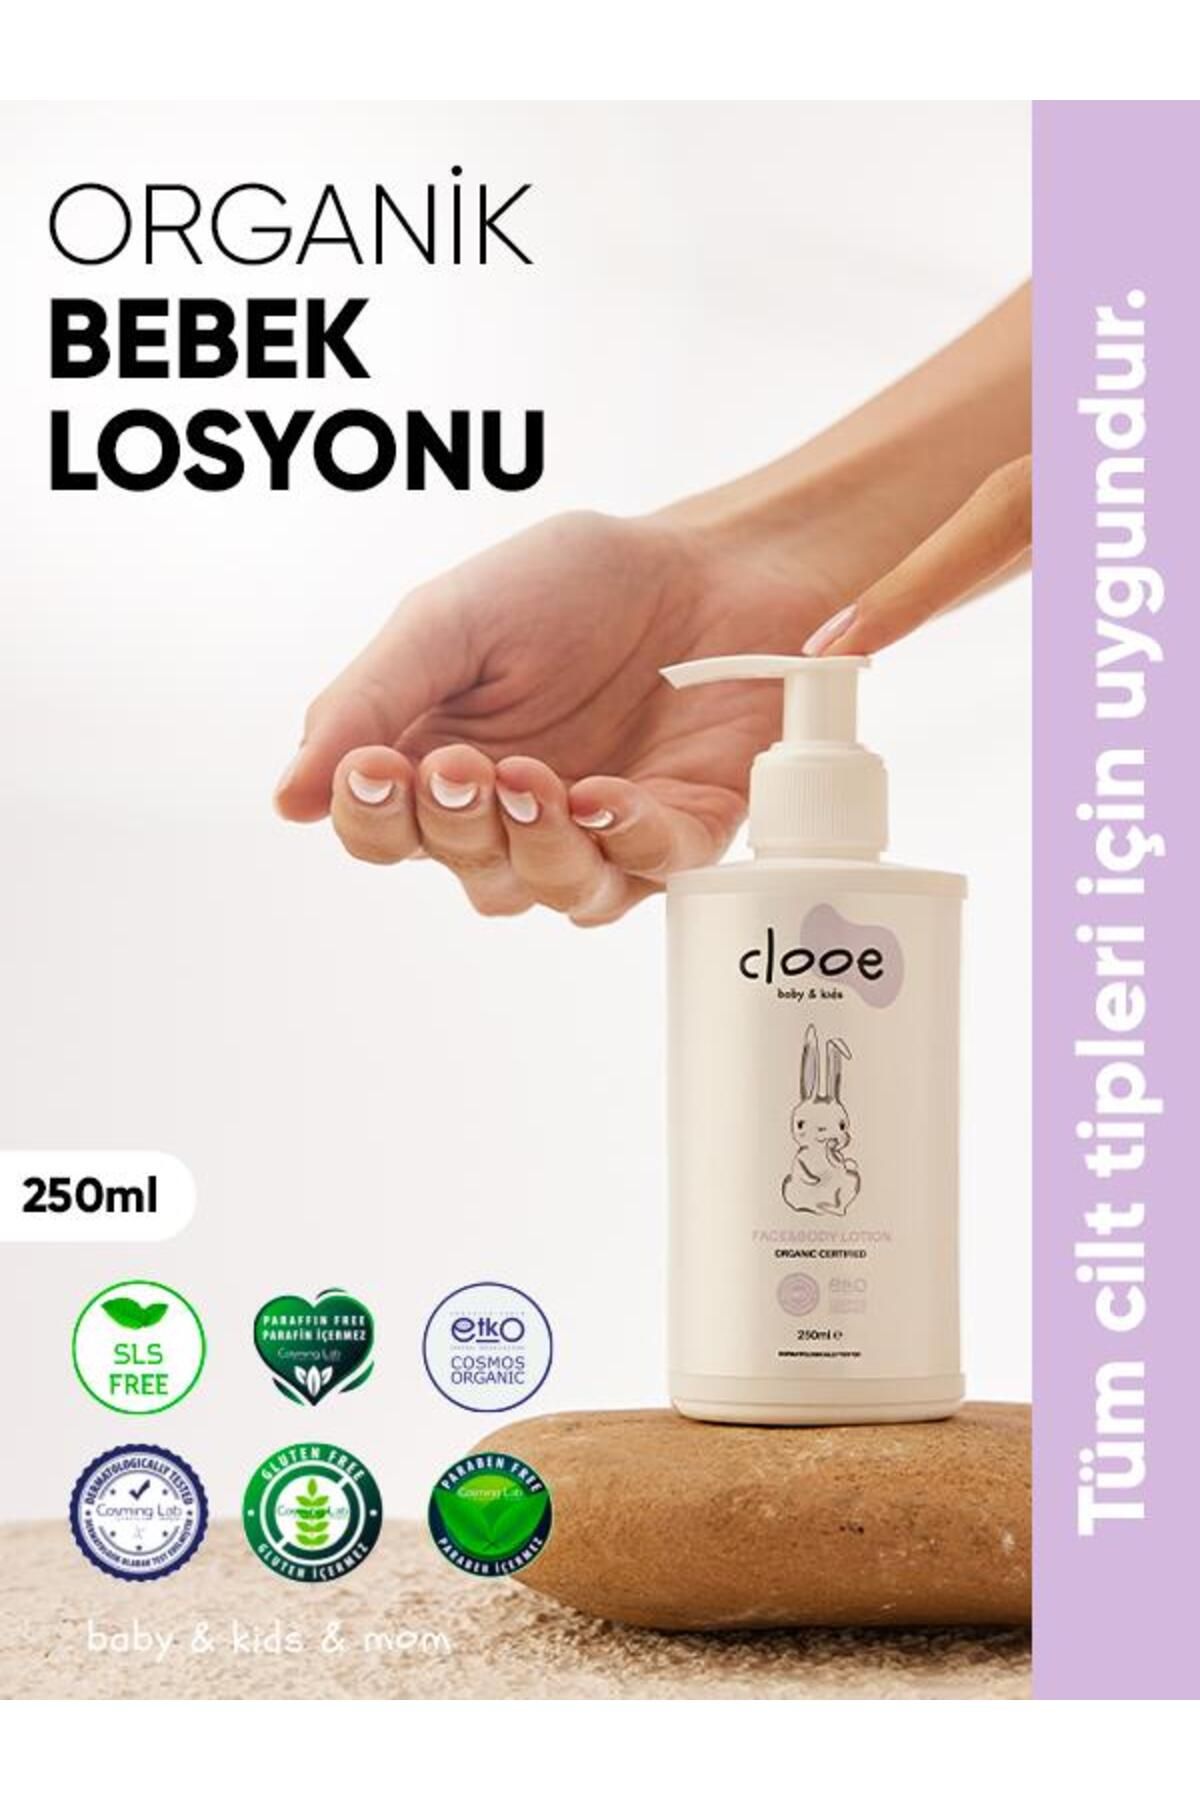 clooe Organik Bebek Losyonu (250ML) - Argan Yağı, Zeytinyağı, Gül Suyu - Yenidoğan Kullanımına Uygun